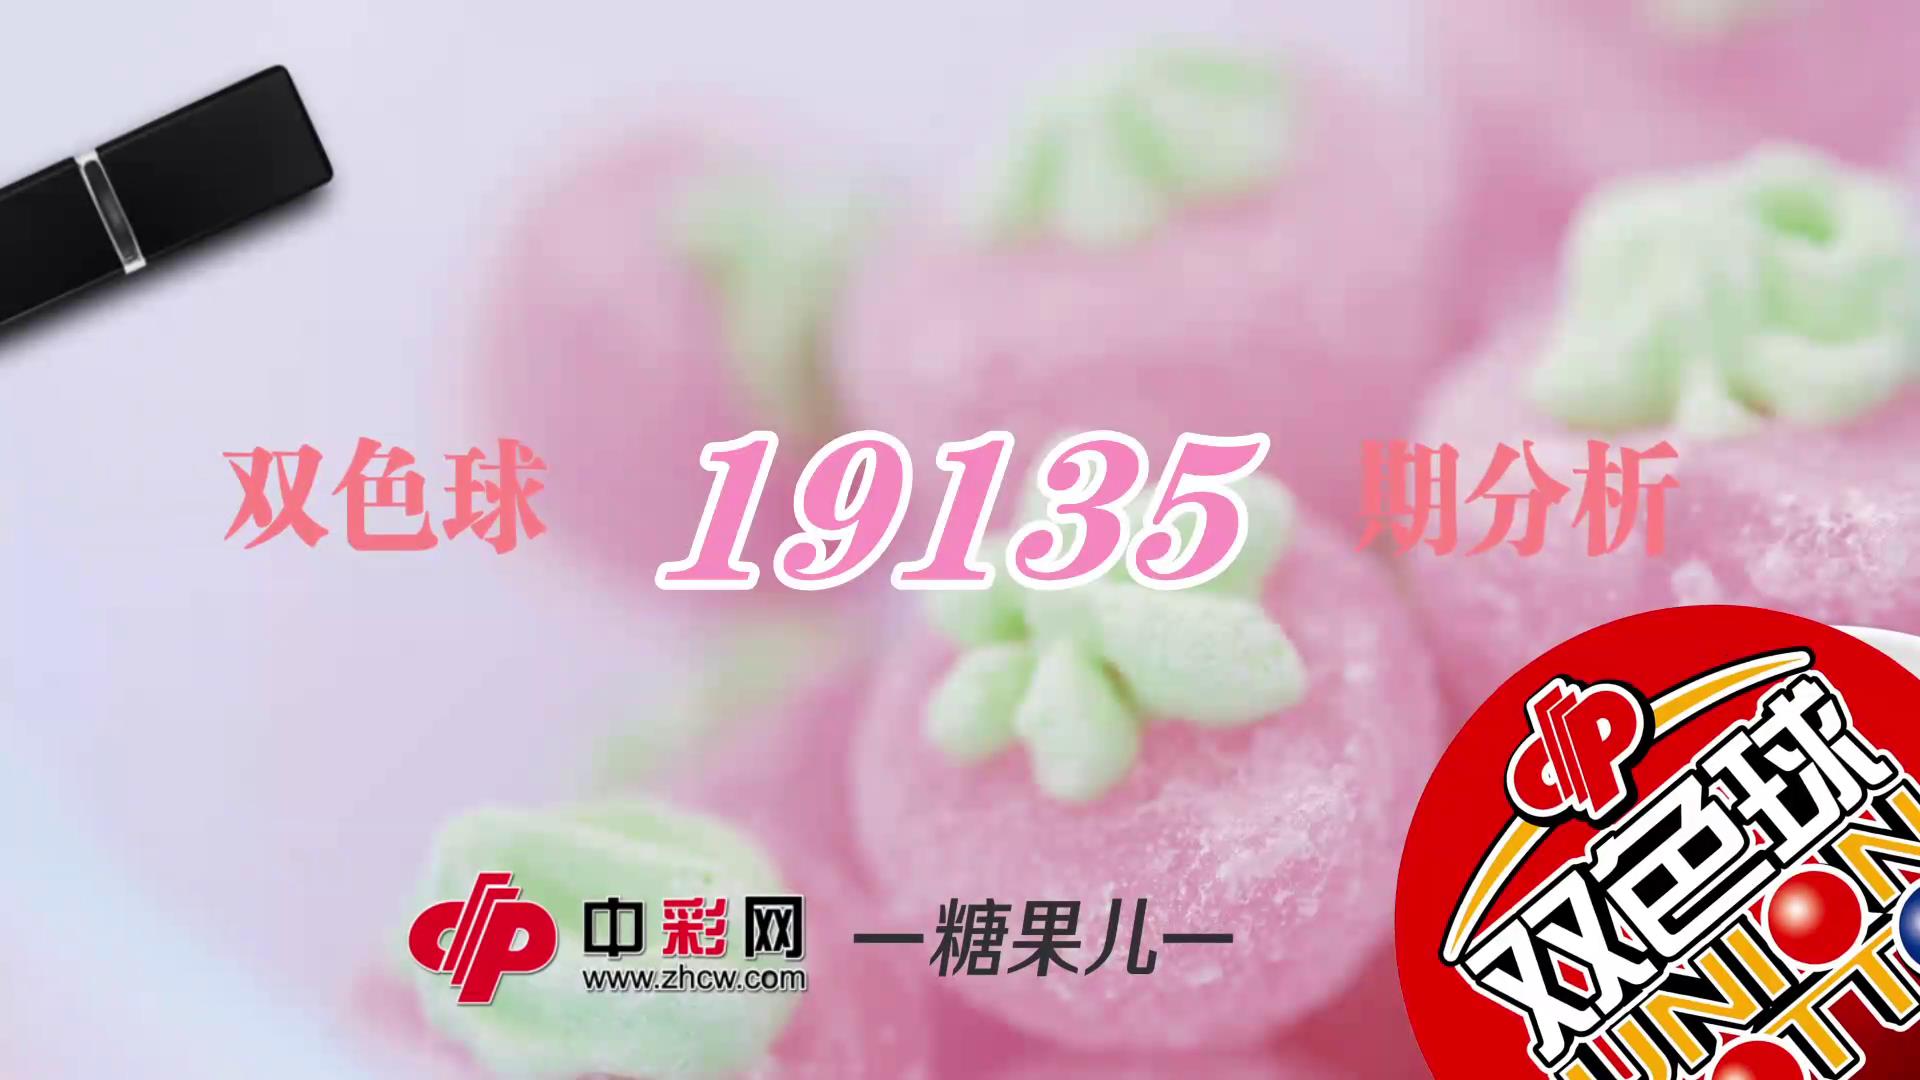 【中彩视频】糖果儿双色球第19135期